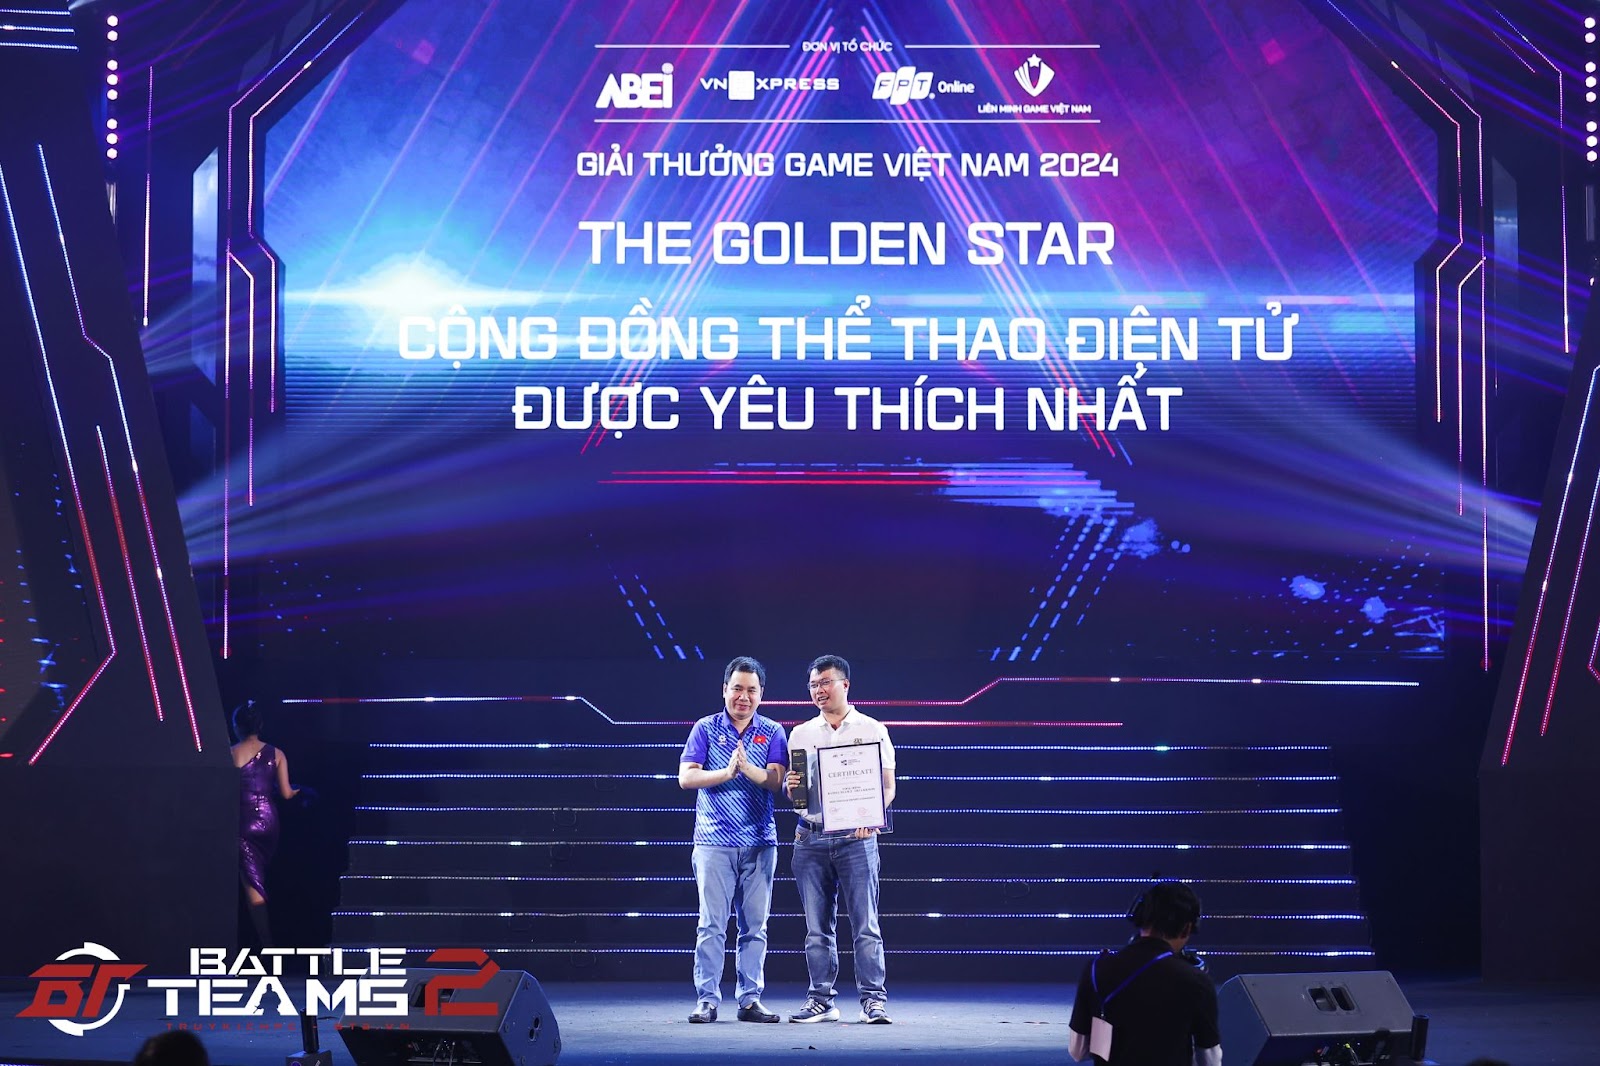 Ông Phạm Trung Sơn (phải) - Đại diện VTC Mobile lên nhận giải Cộng đồng Thể thao điện tử được yêu thích nhất cho Battle Teams 2 (Truy Kích PC)